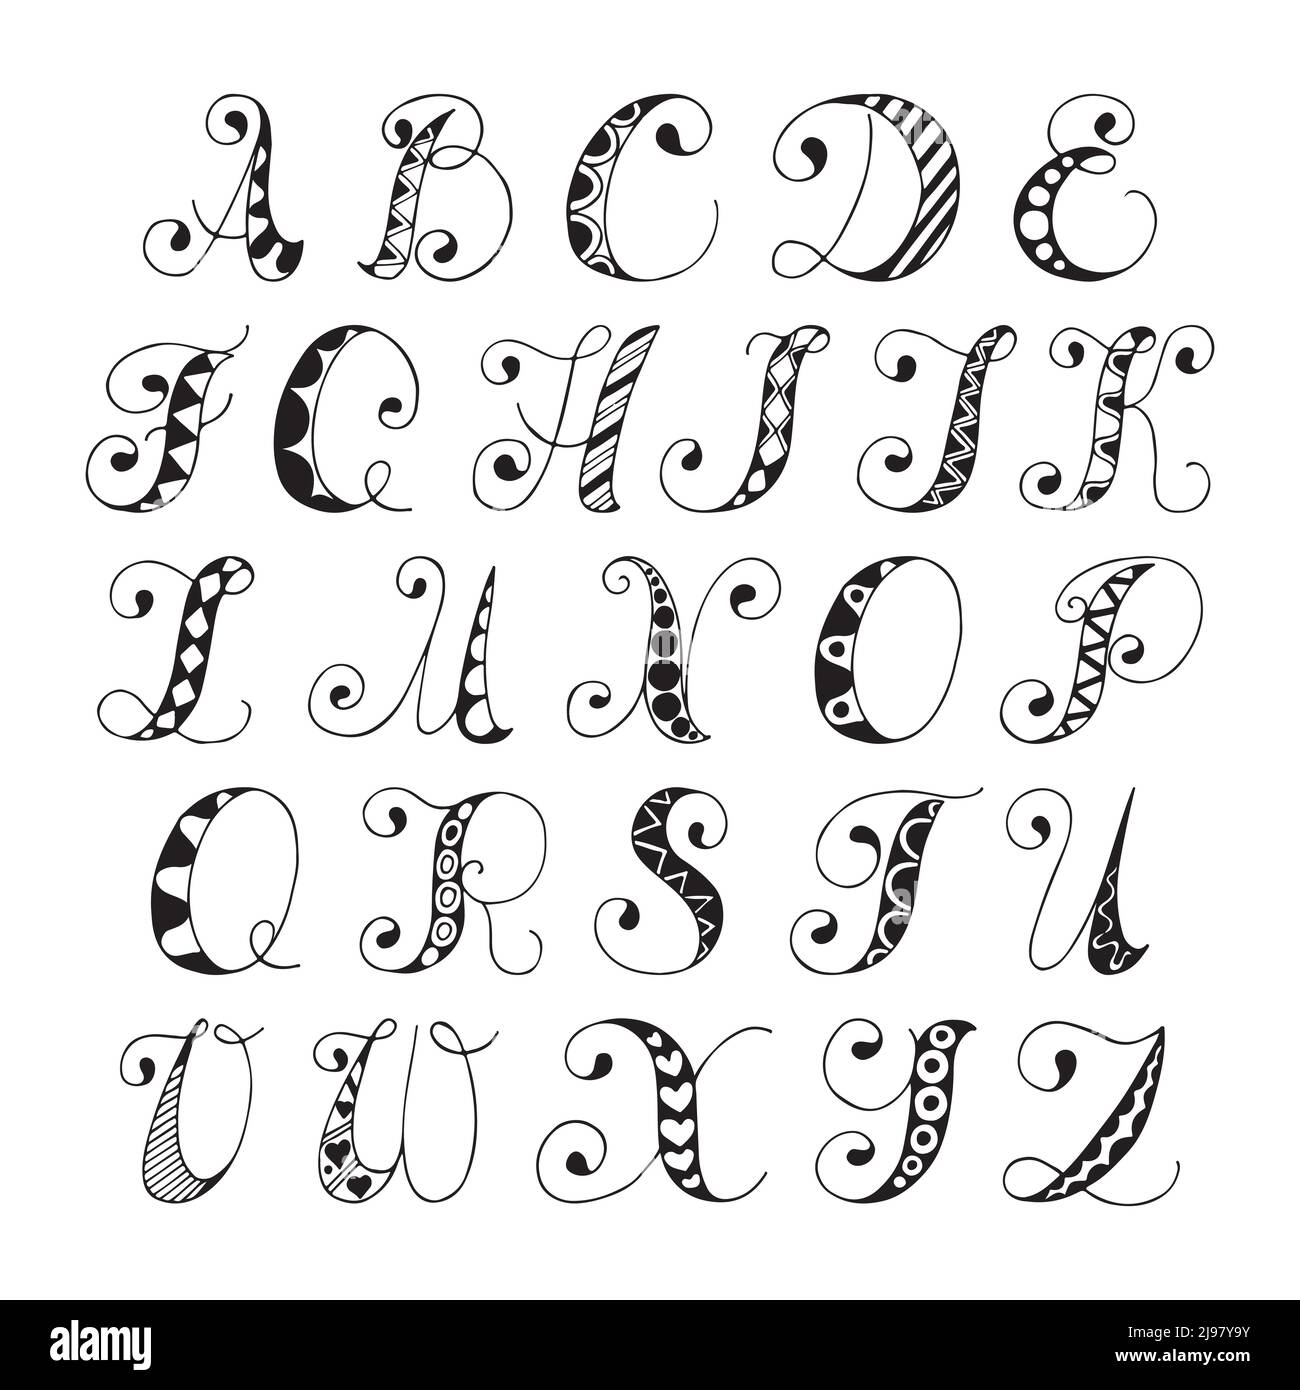 Croquis dessinés à la main en noir et blanc de l'alphabet lettres police vector illustration isolé Illustration de Vecteur